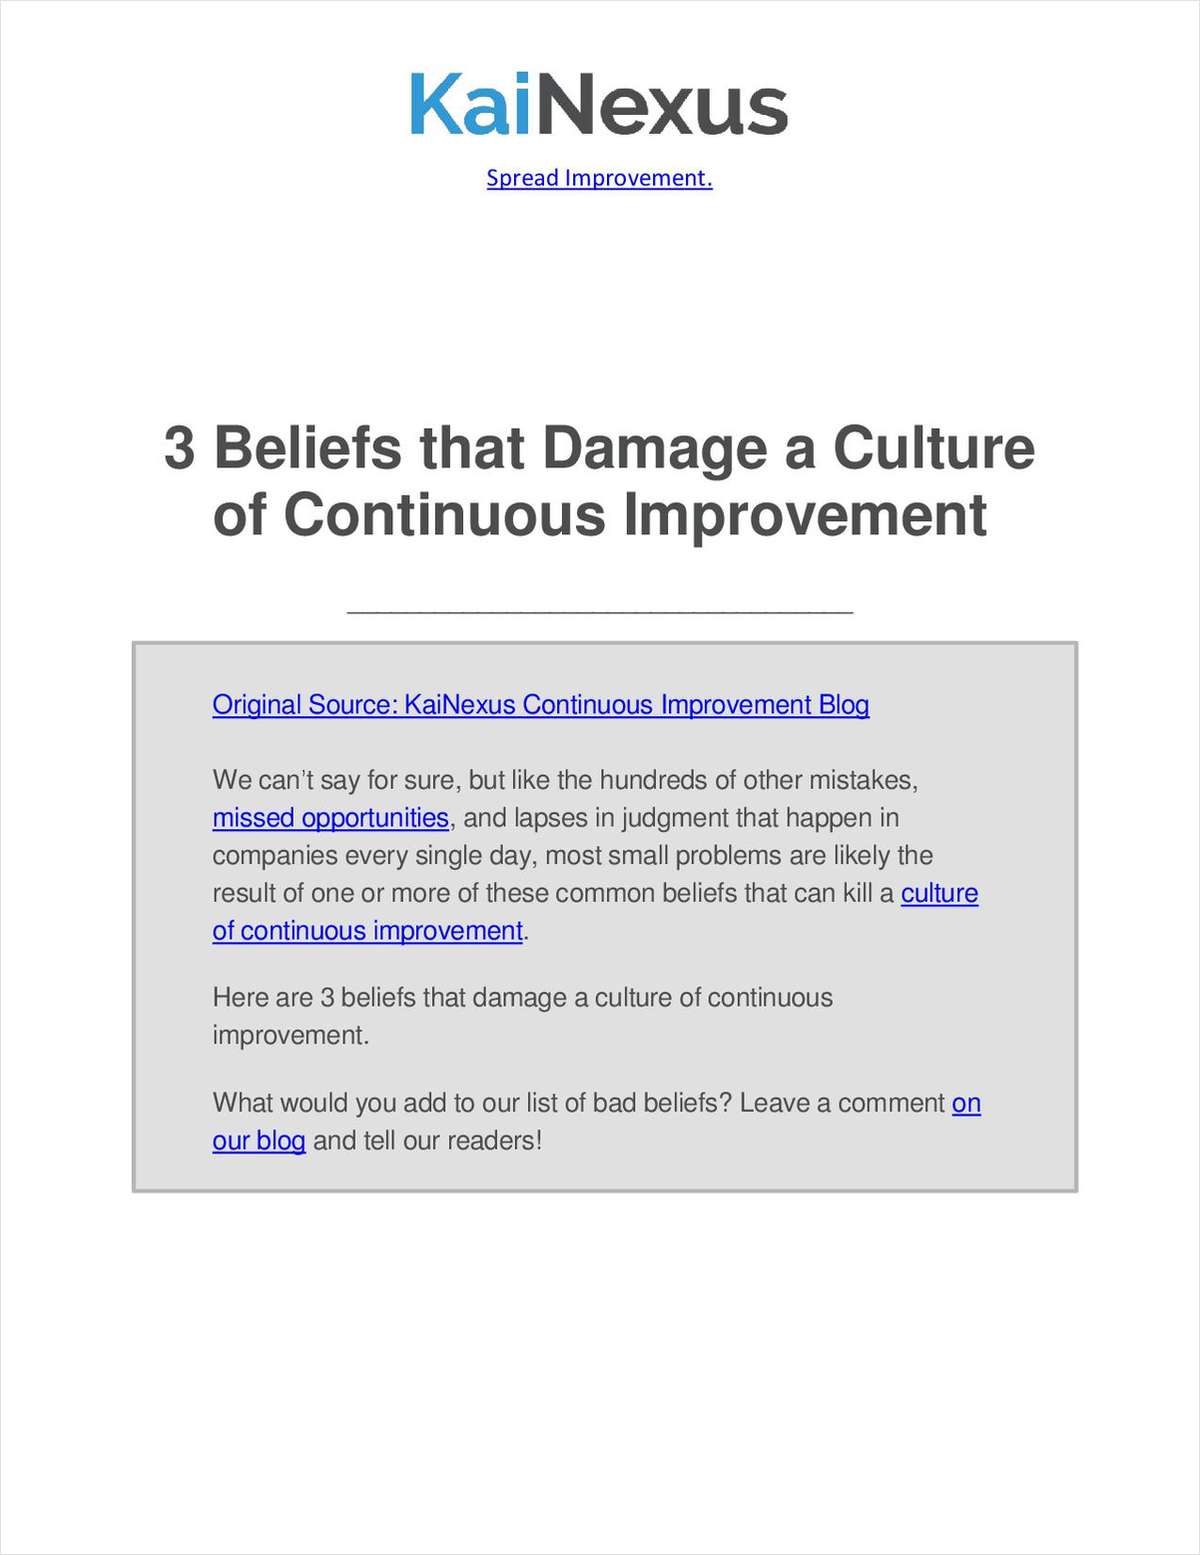 3 Beliefs that Damage a Culture of Continuous Improvement